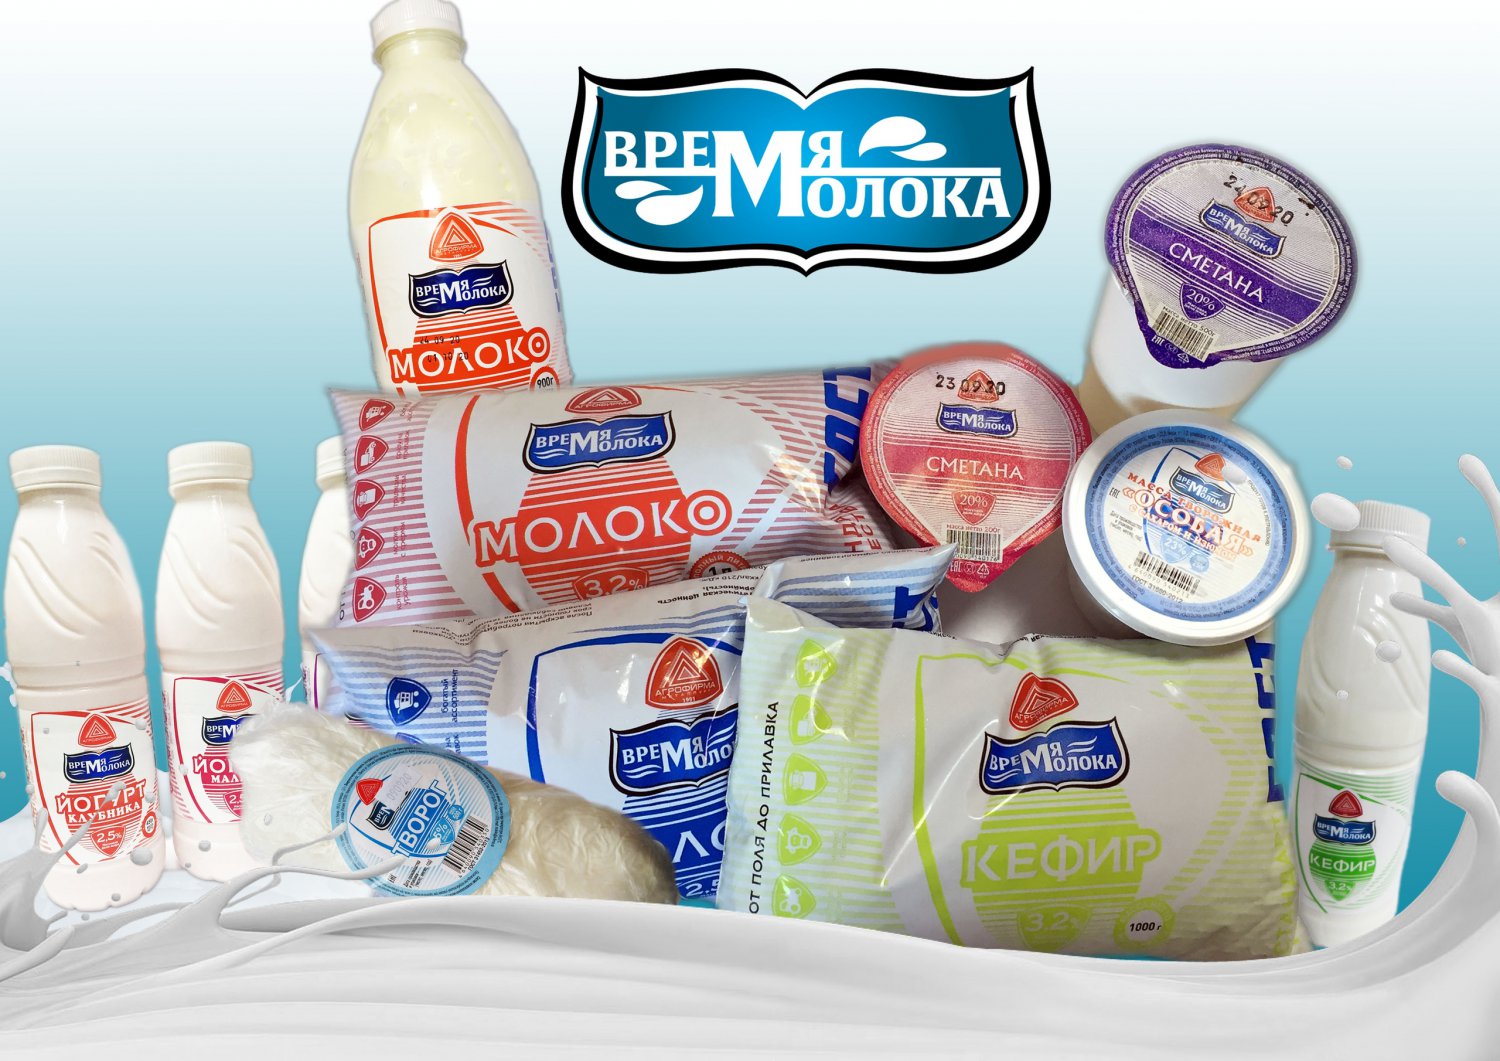 Выксунский молокозавод запустил новую торговую марку «Время Молока»